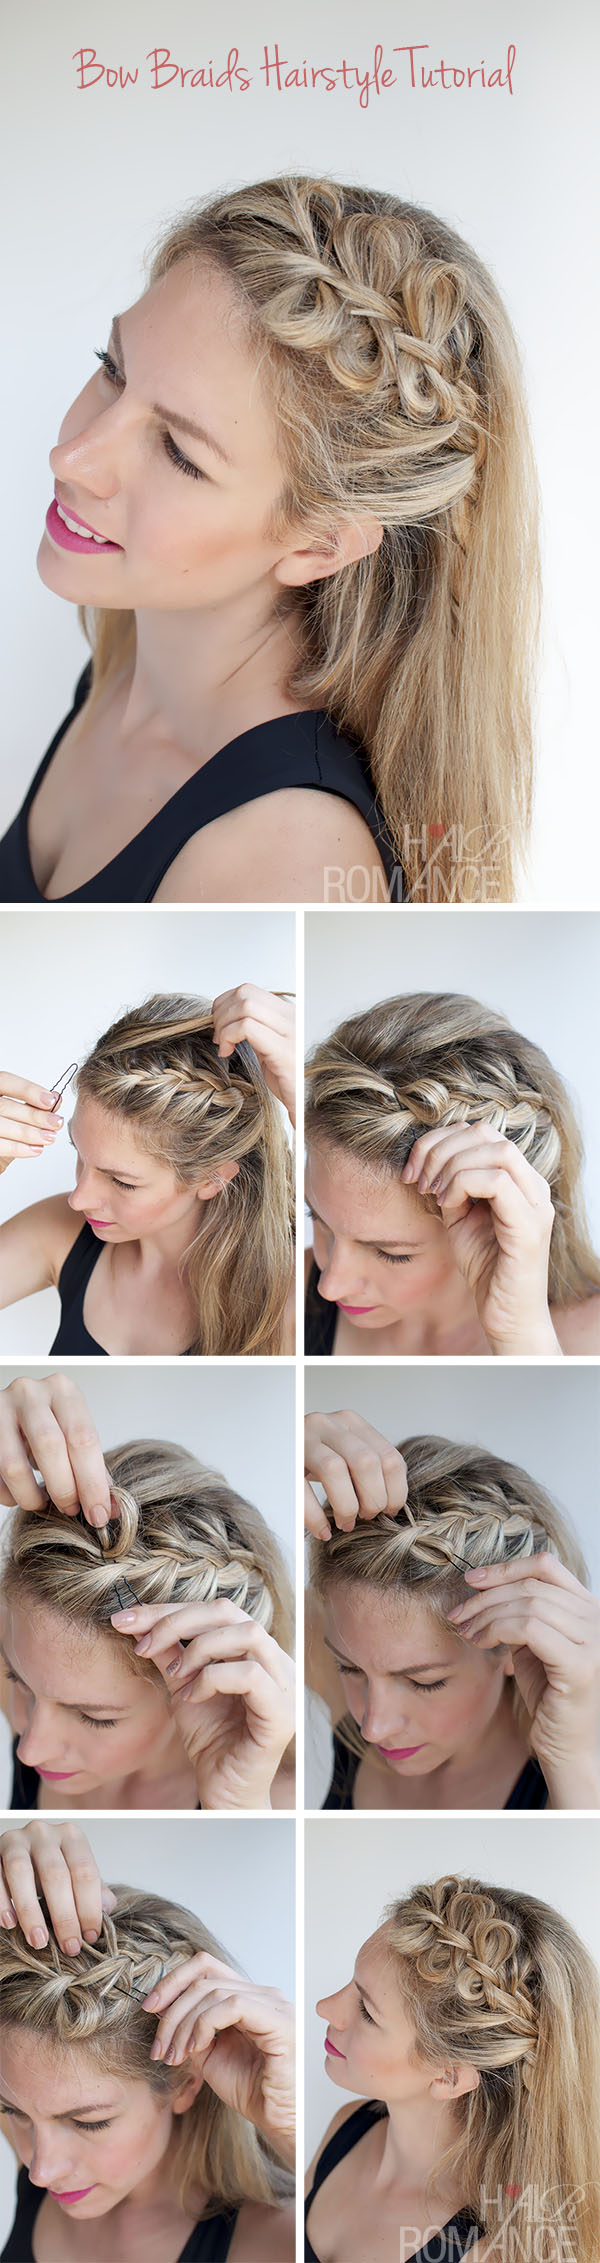 hair bow braids hairstyle tutorial